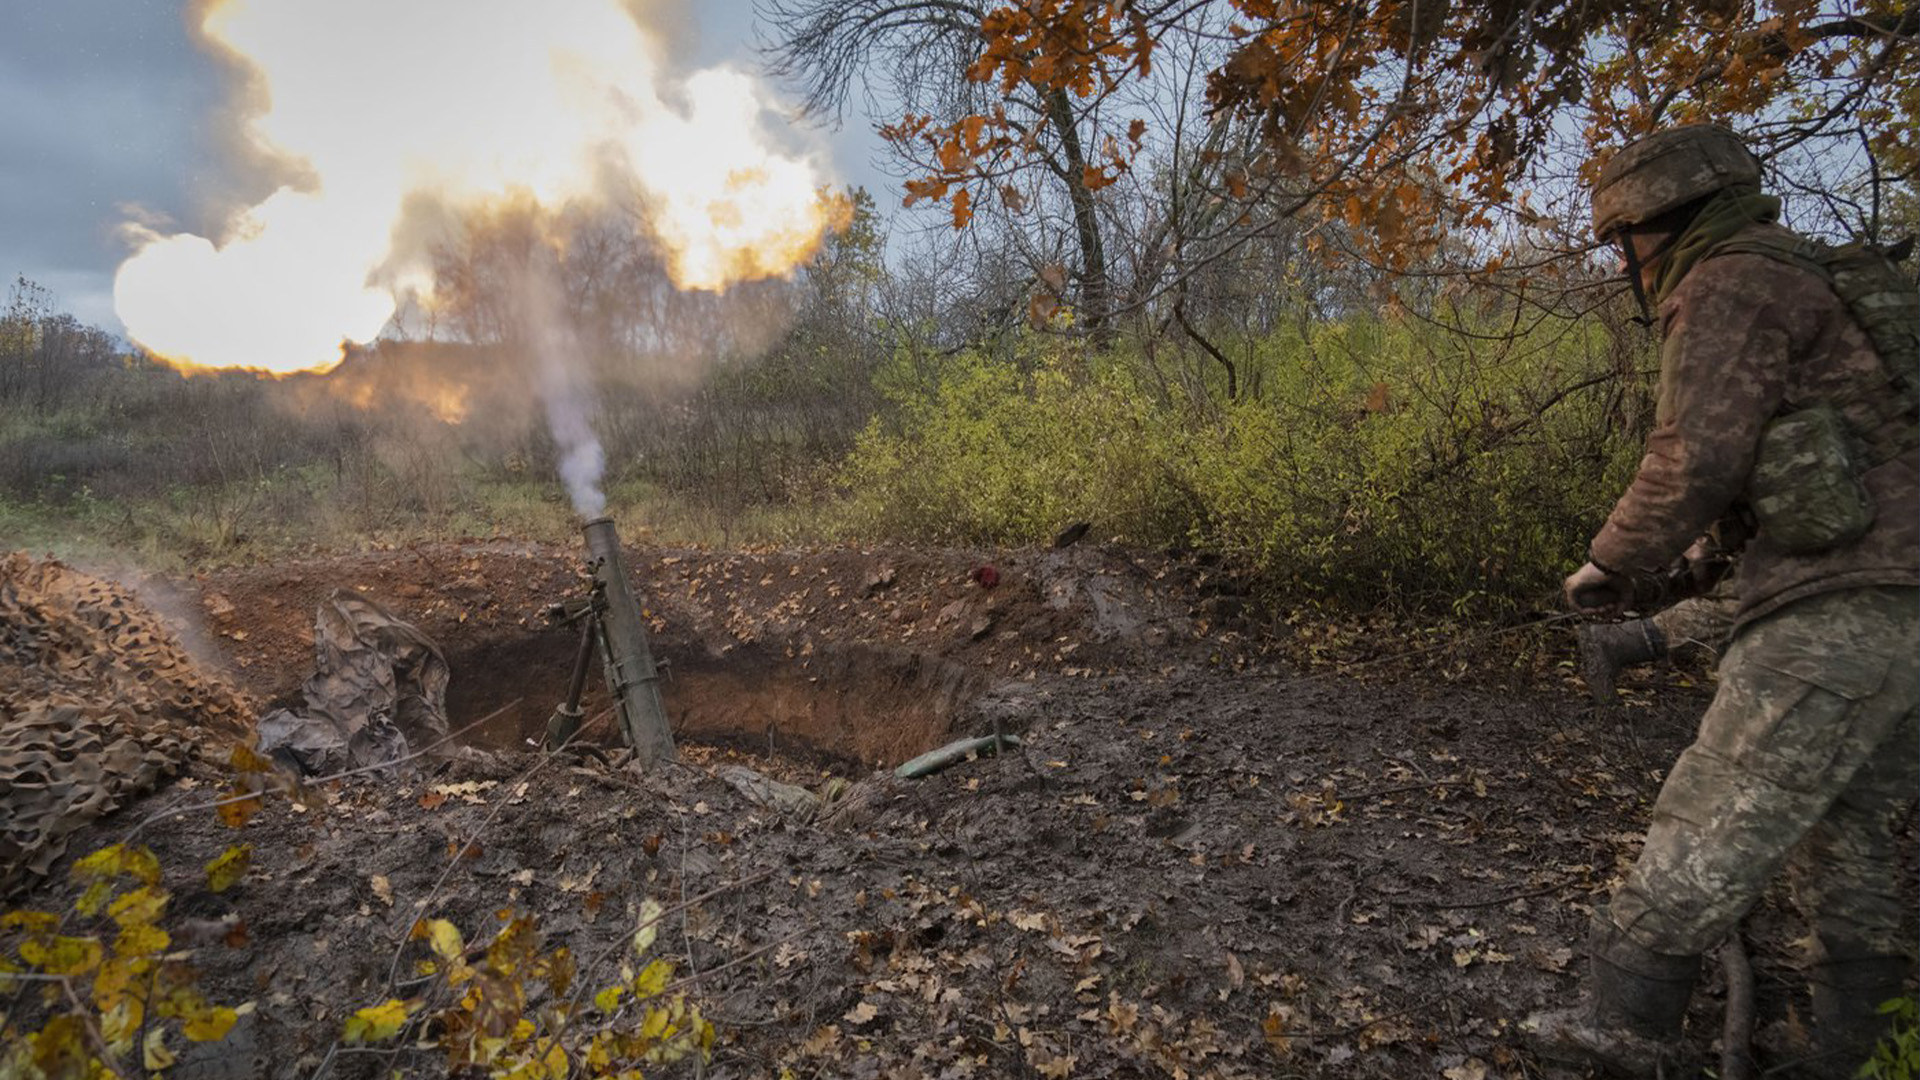 Les troupes ukrainiennes utilisent notamment des mortiers pour essayer de repousser les forces russes qui se rapprochent de Bakhmout.